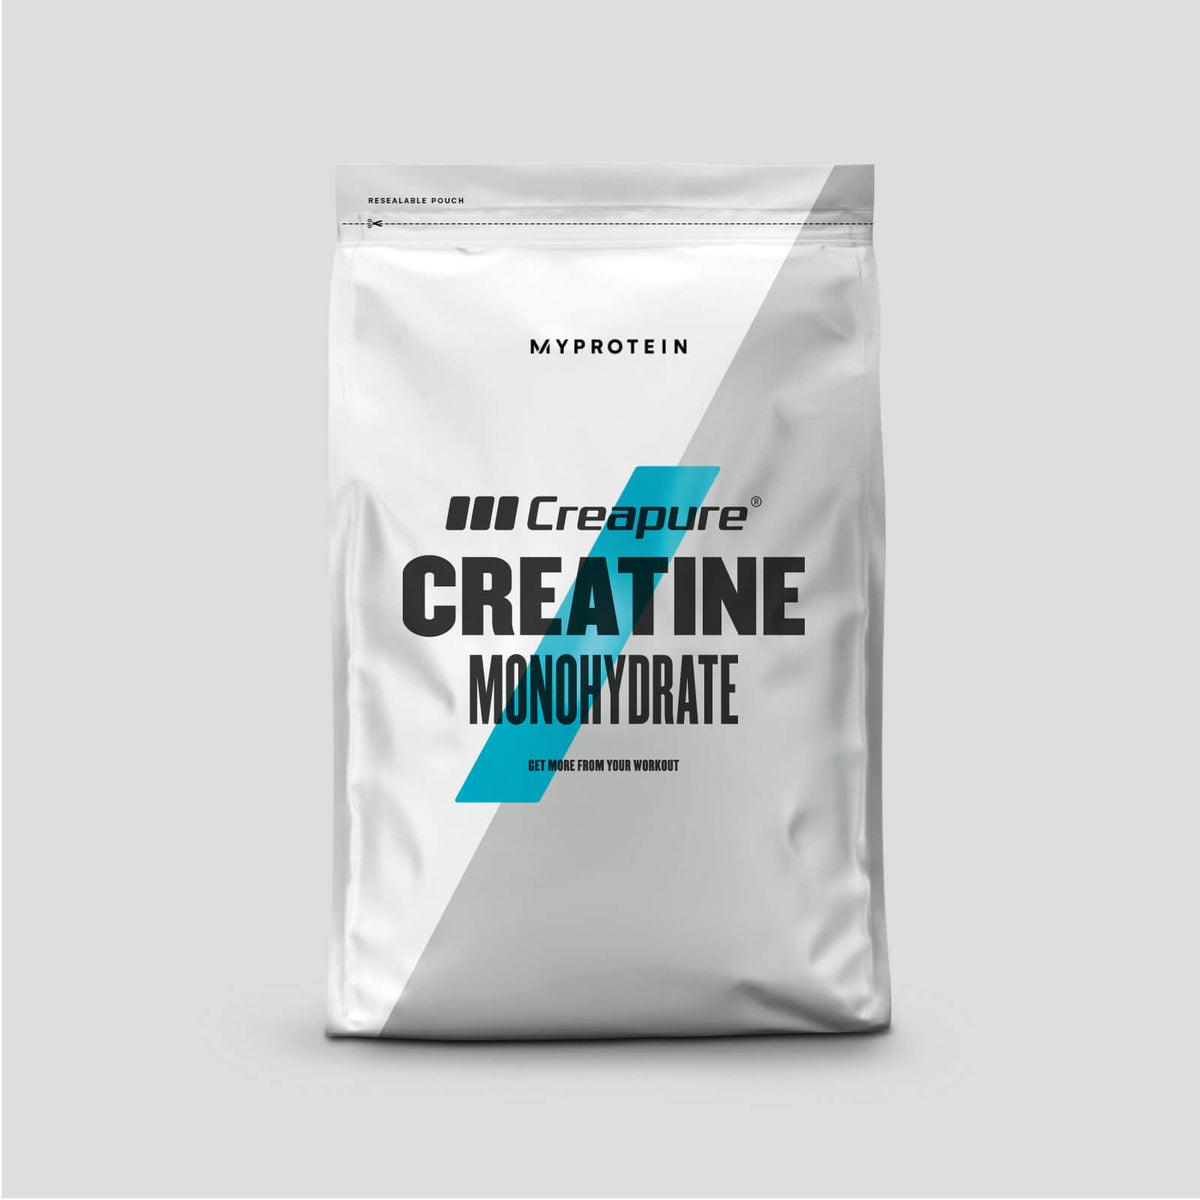 Creatine Monohydrate Creapure powder - Myprotein